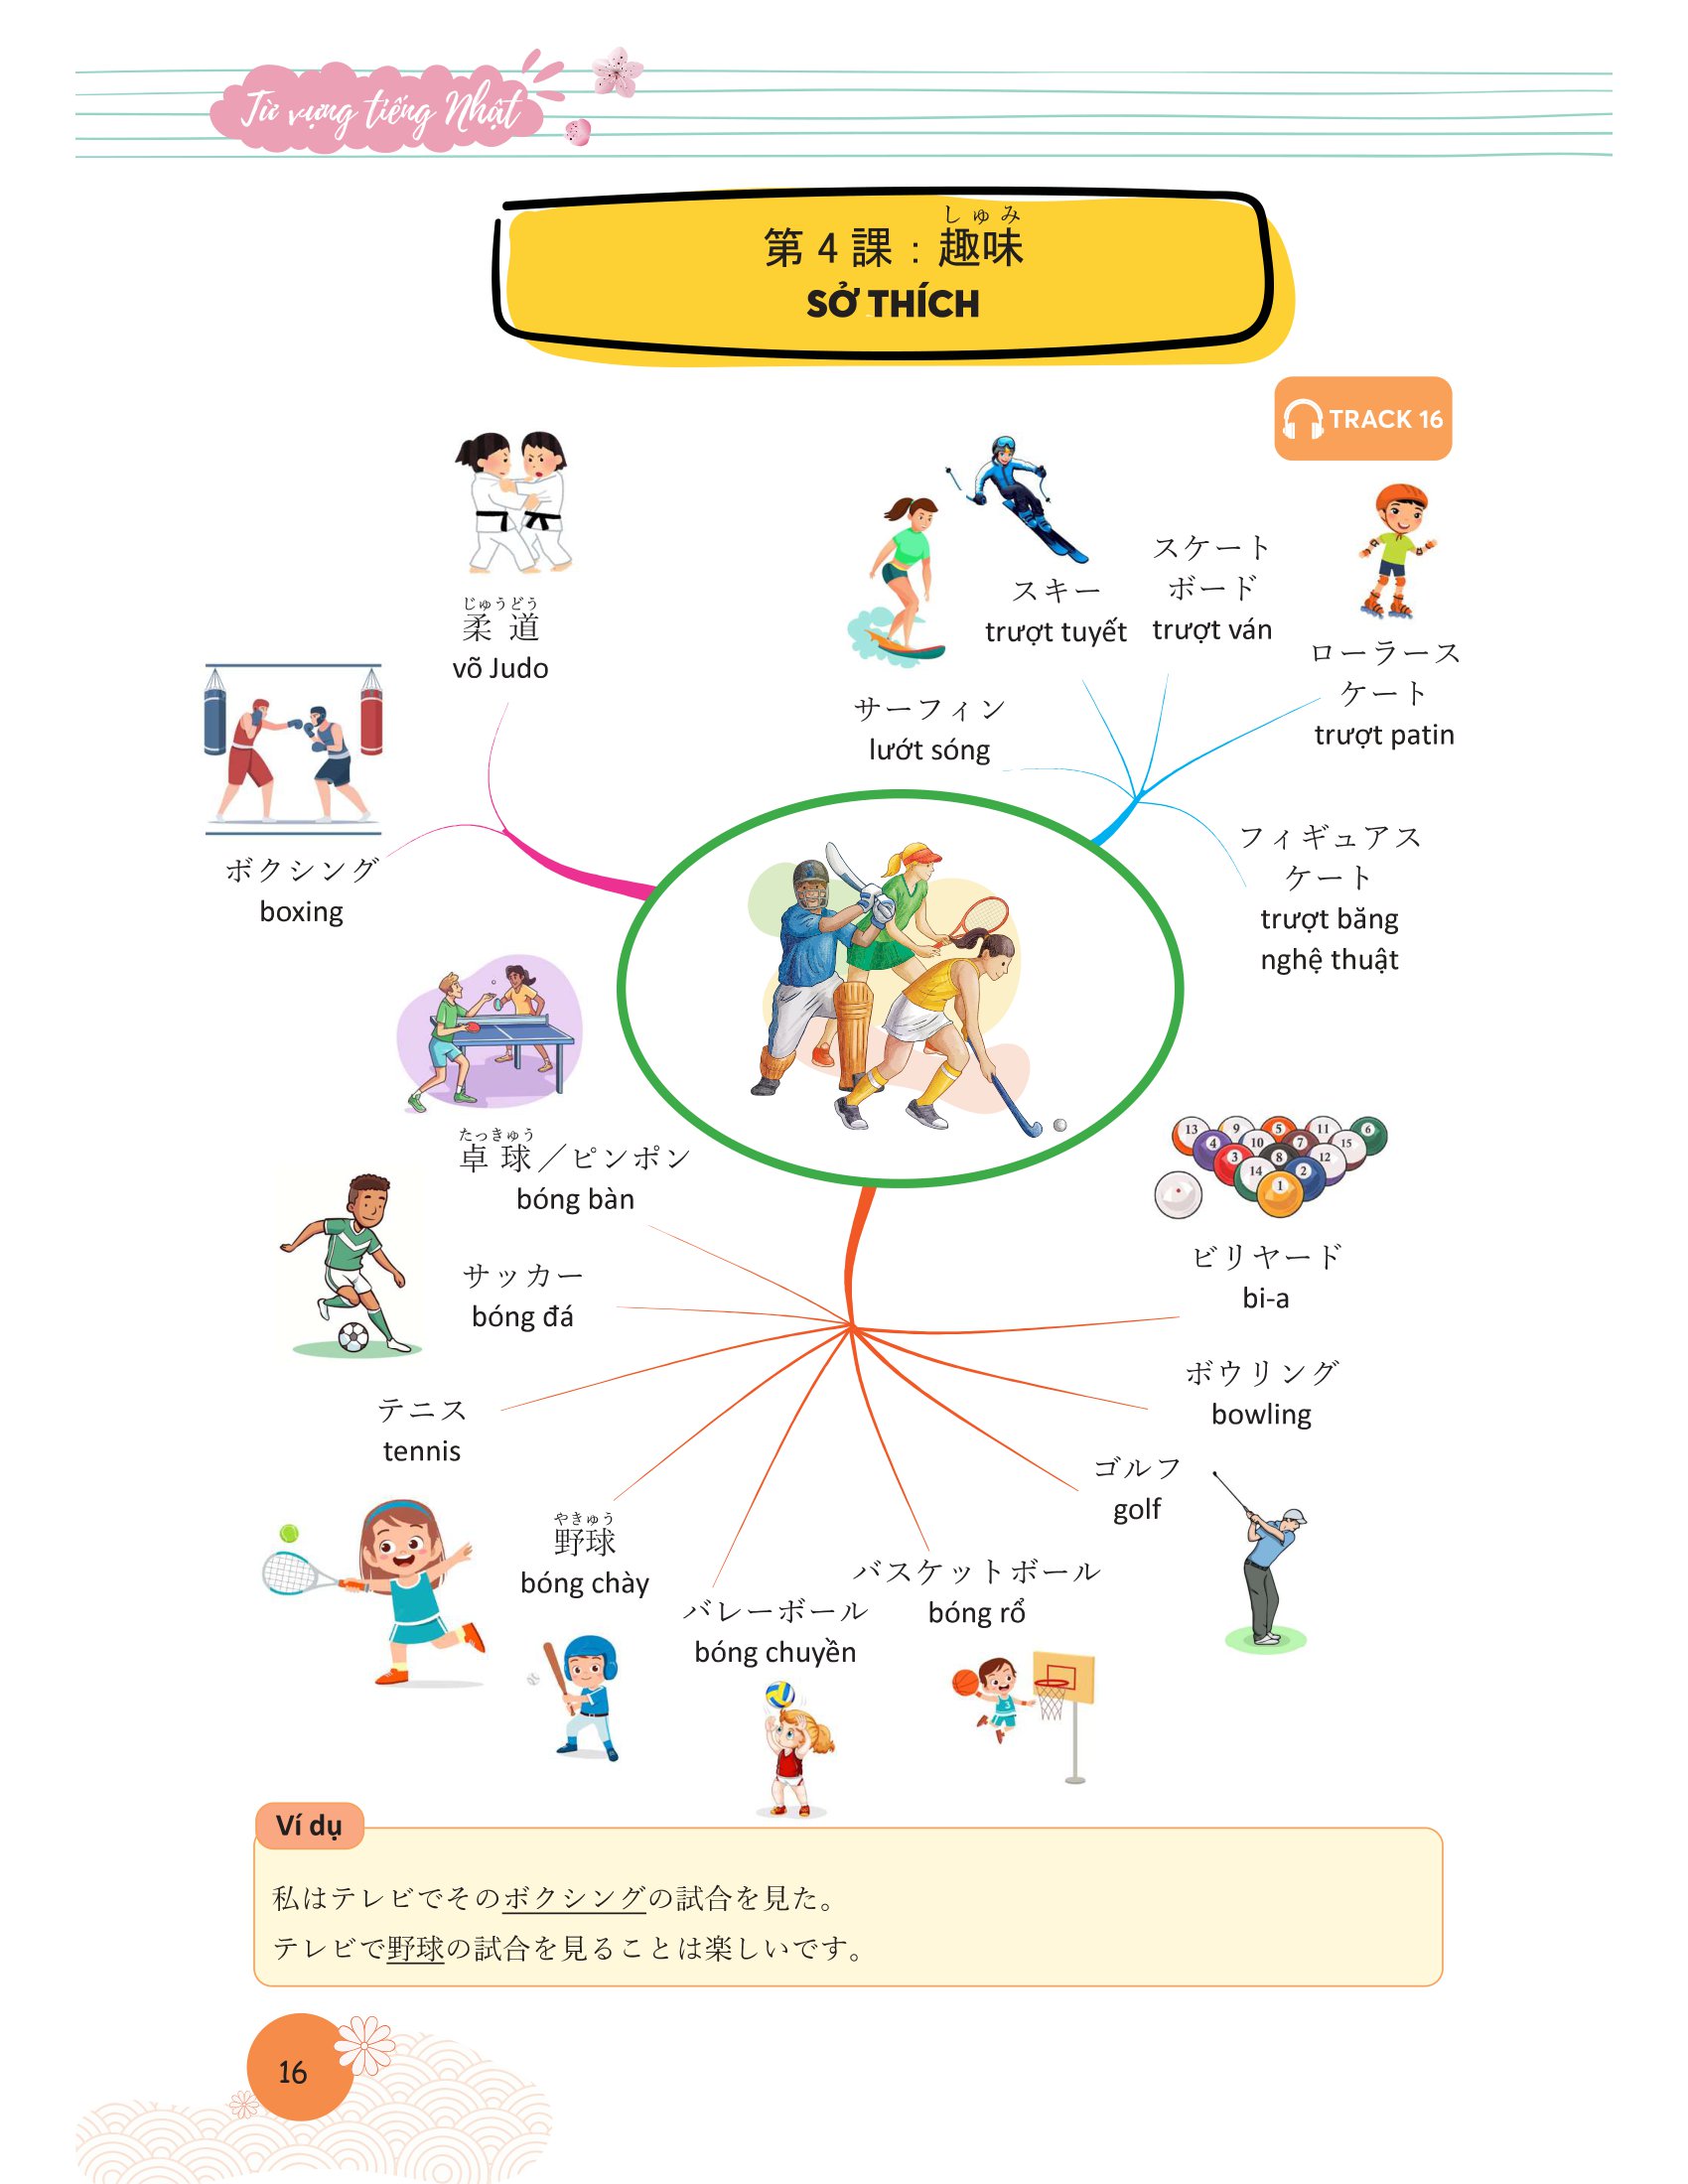 Mindmap Từ Vựng Tiếng Nhật - Học Từ Vựng Tiếng Nhật Qua Sơ Đồ Tư Duy PDF